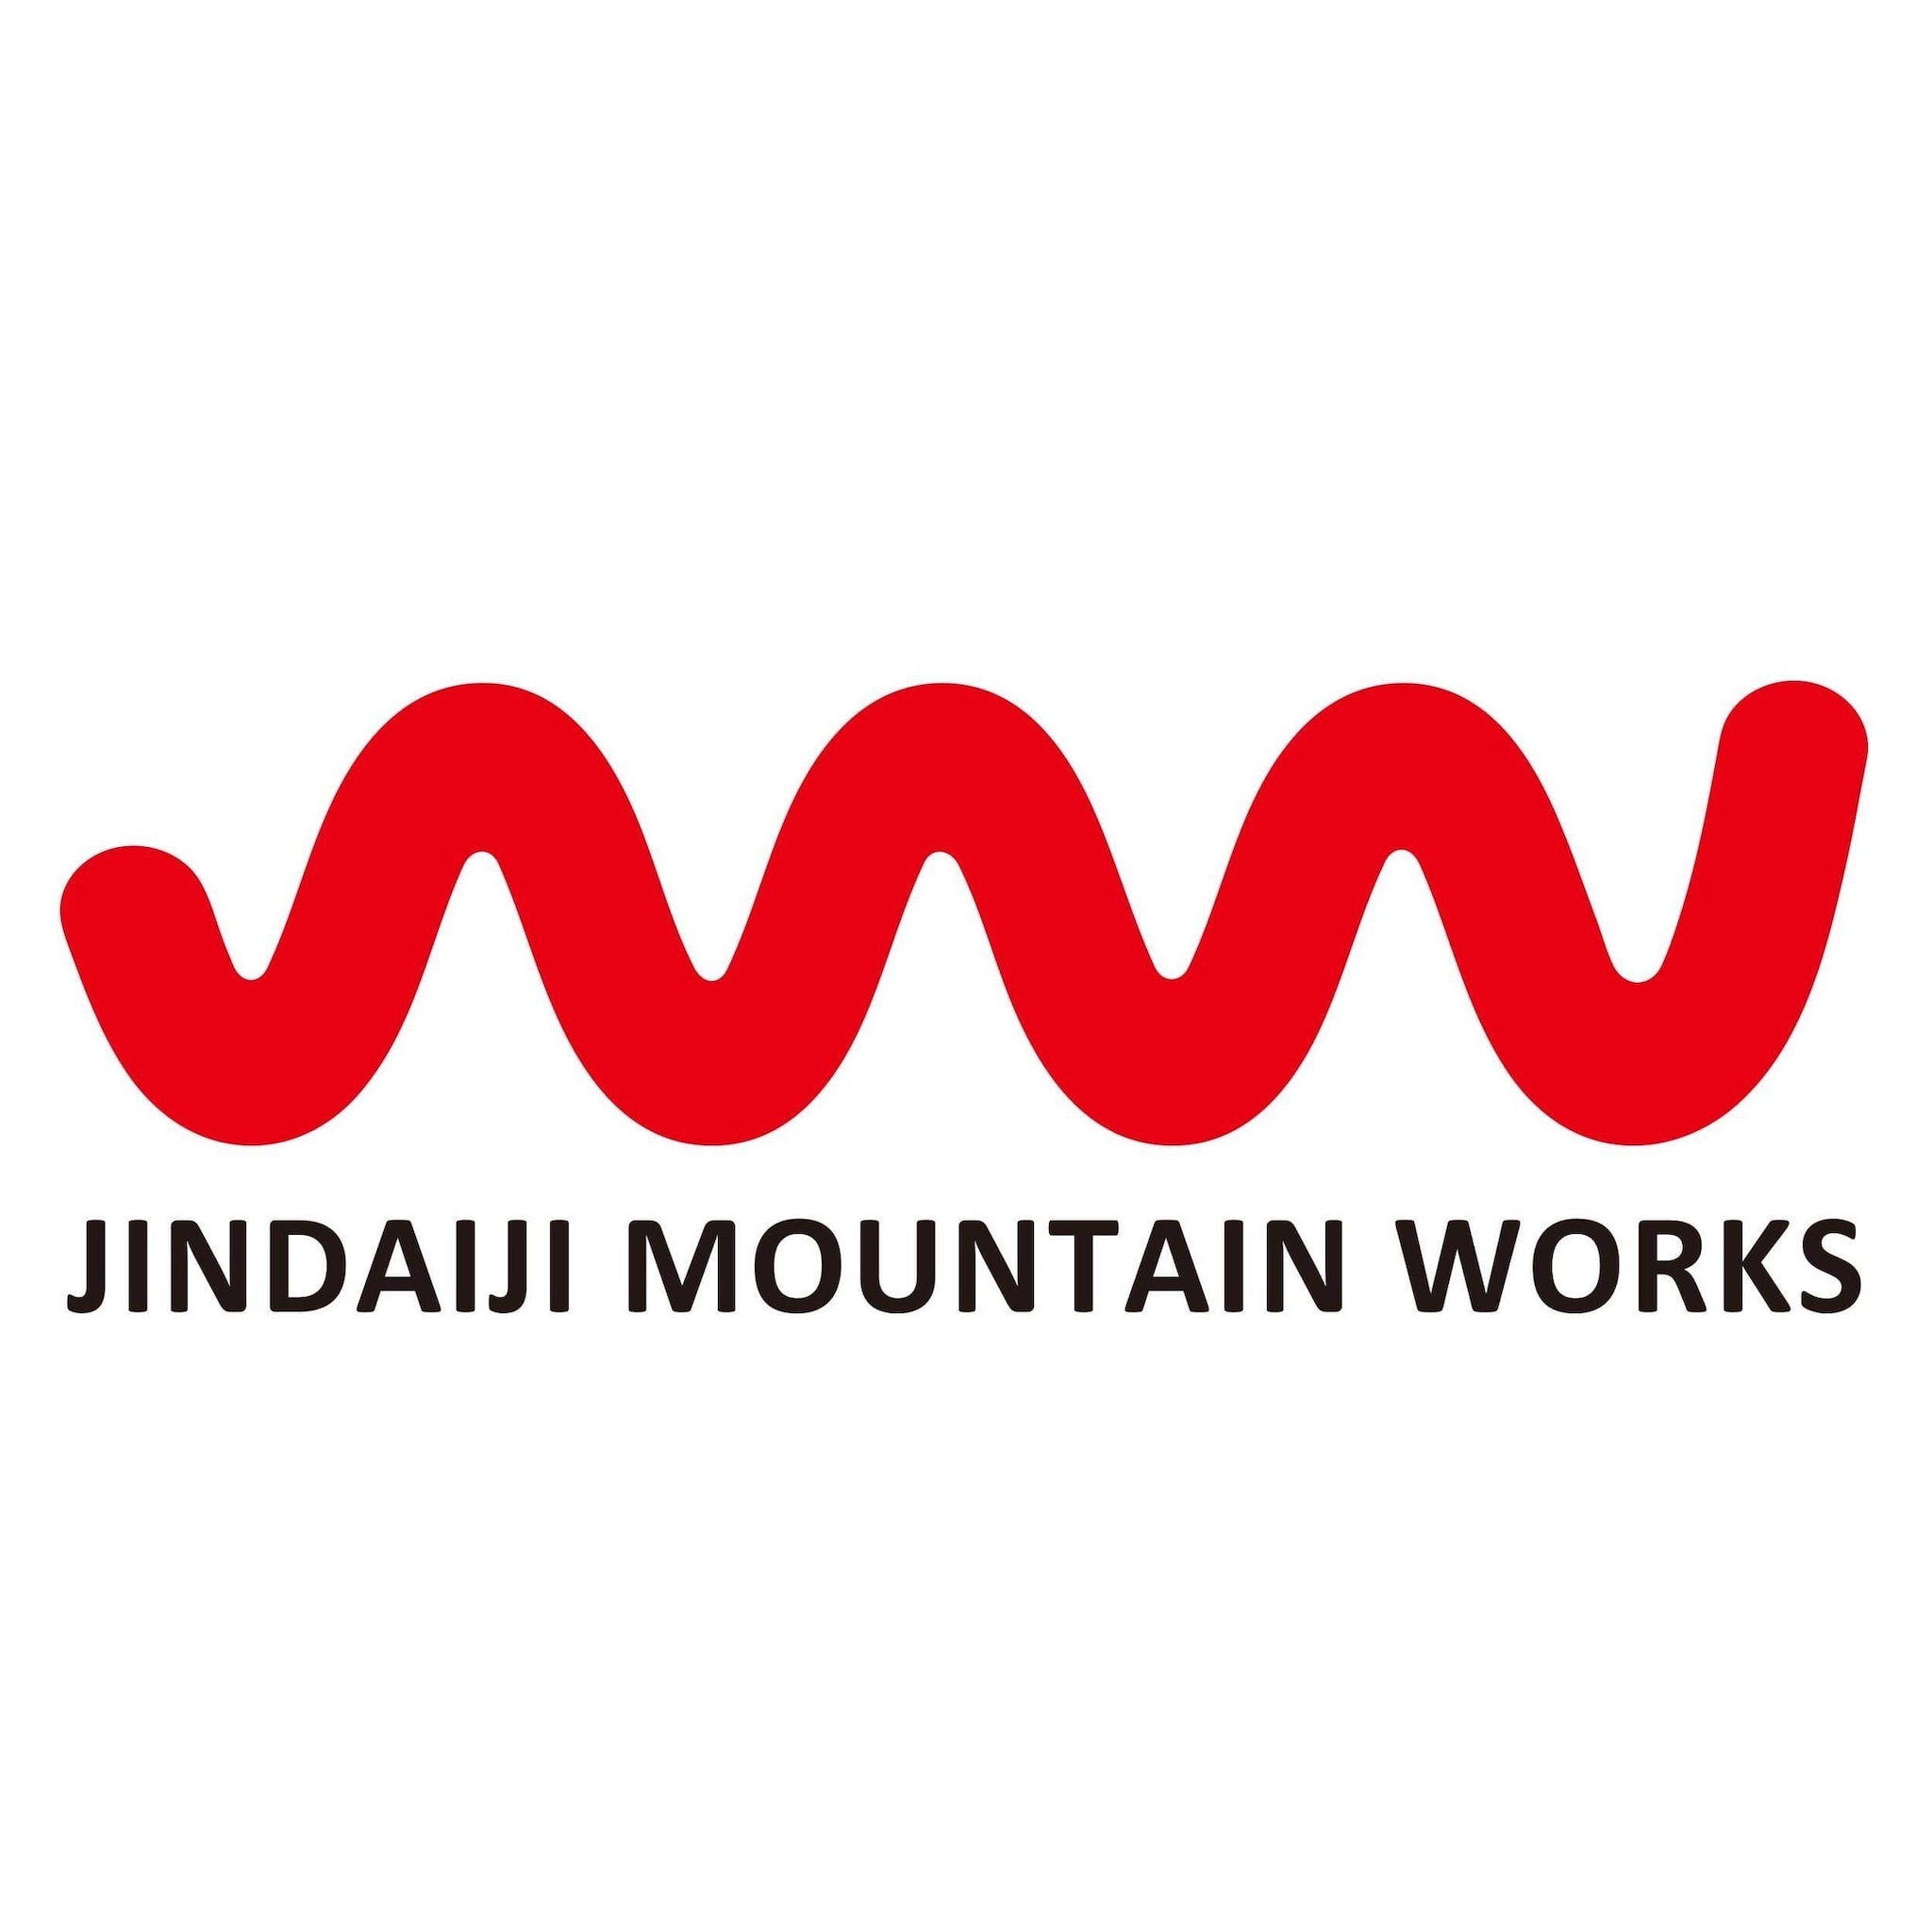 JINDAIJI MOUNTAIN WORKS